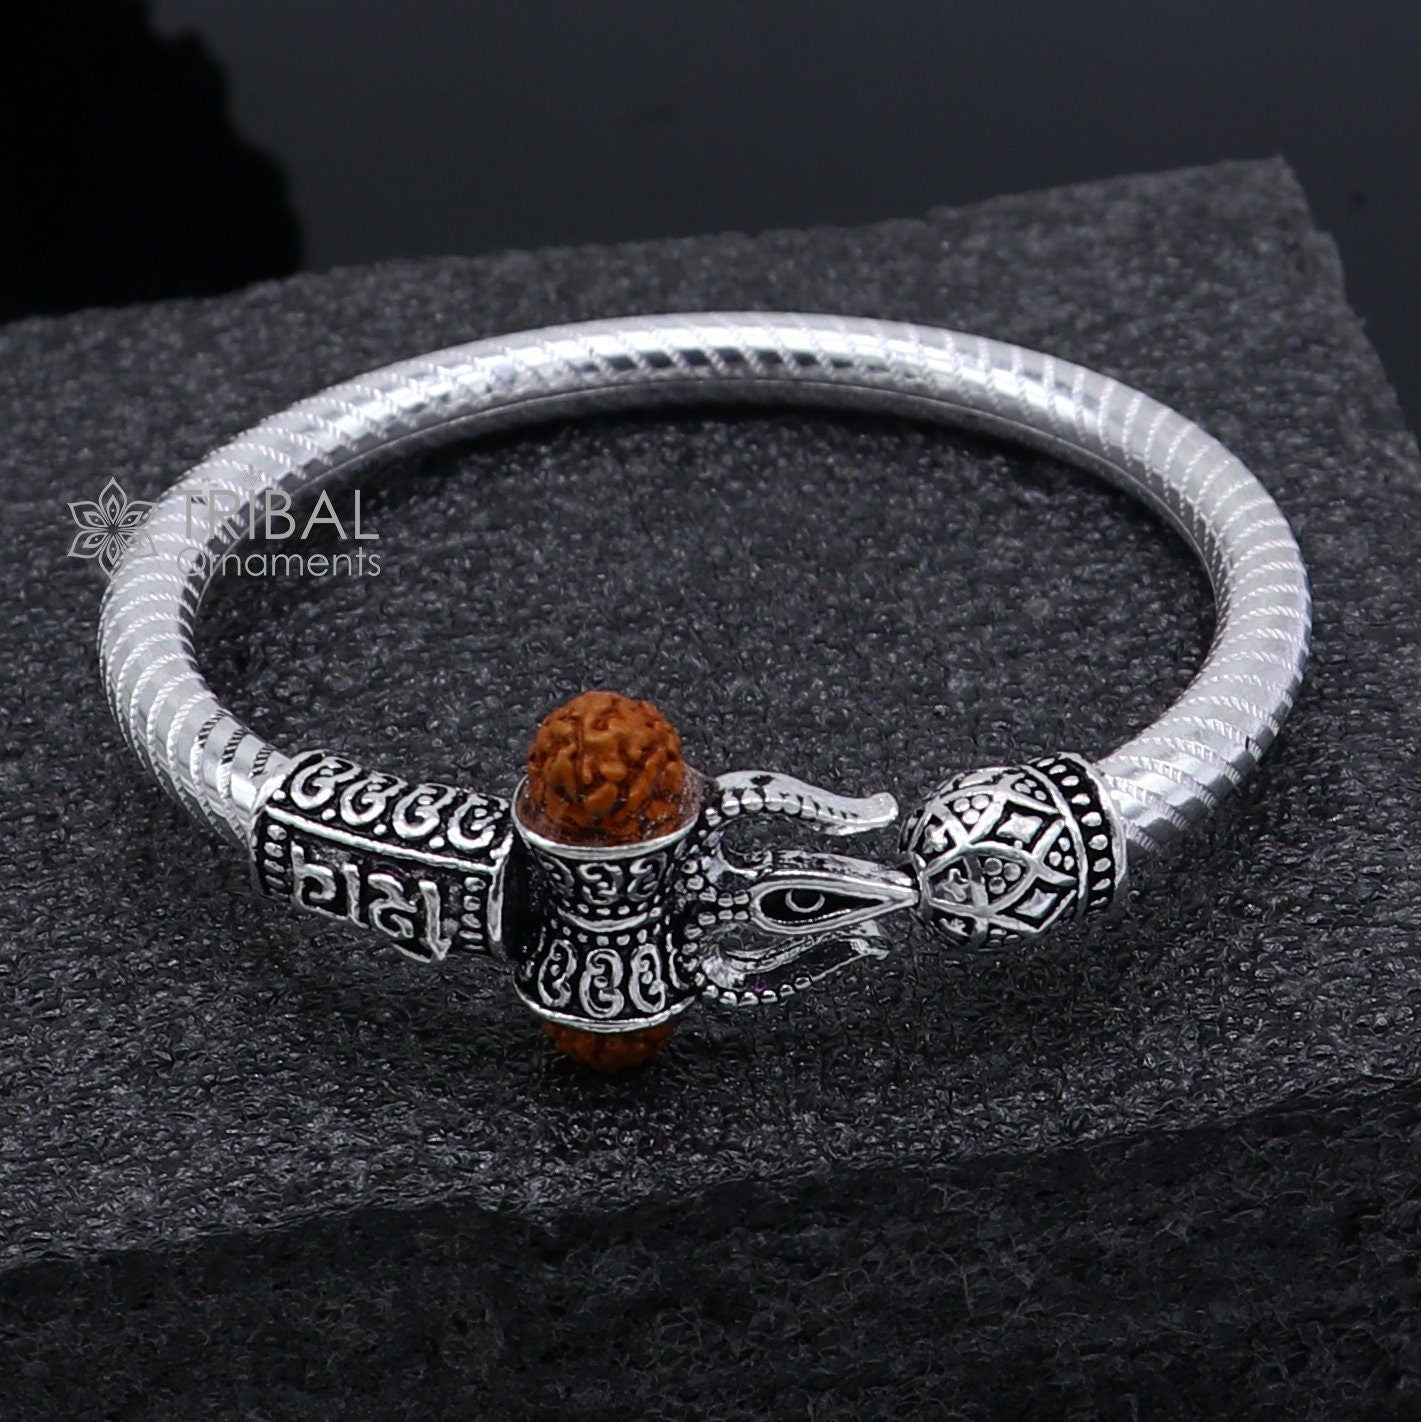 Handmade Sterling silver Lord Shiva Trident Kada Mahakal bracelet, Rudraksh bracelet, Babhubali kada girl's gifting jewelry nsk706 - TRIBAL ORNAMENTS